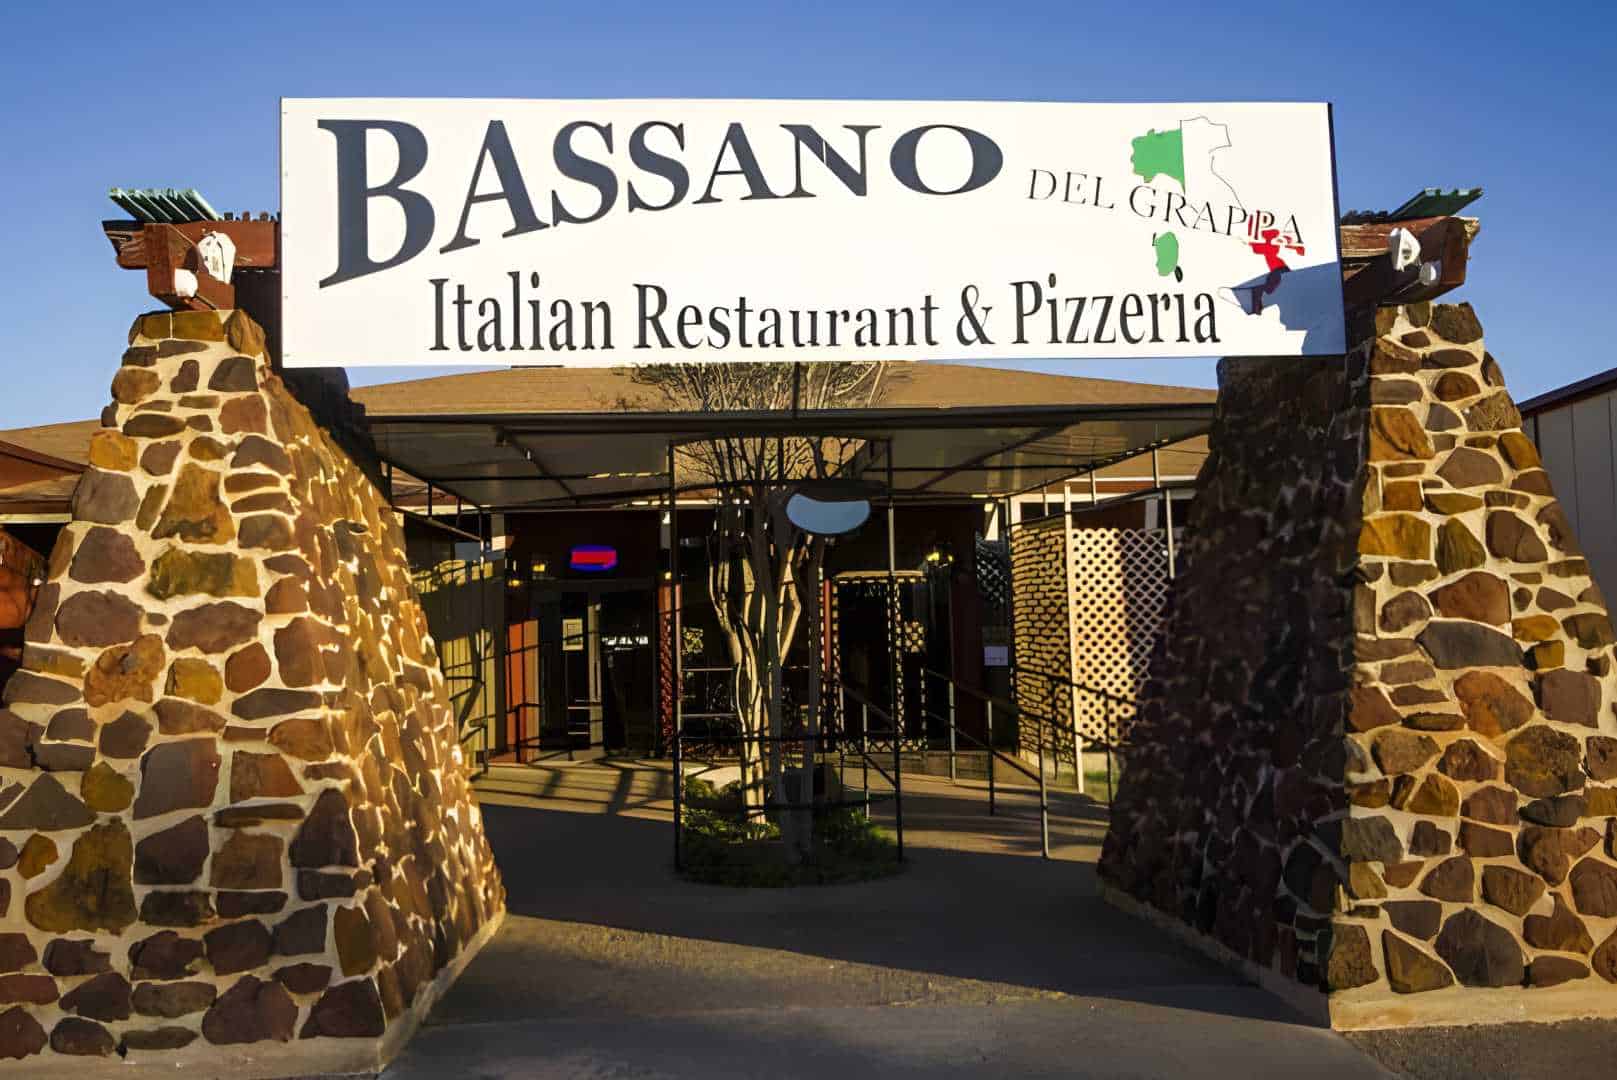 Bassano Del Grappa Italian Restaurant & Pizzeria